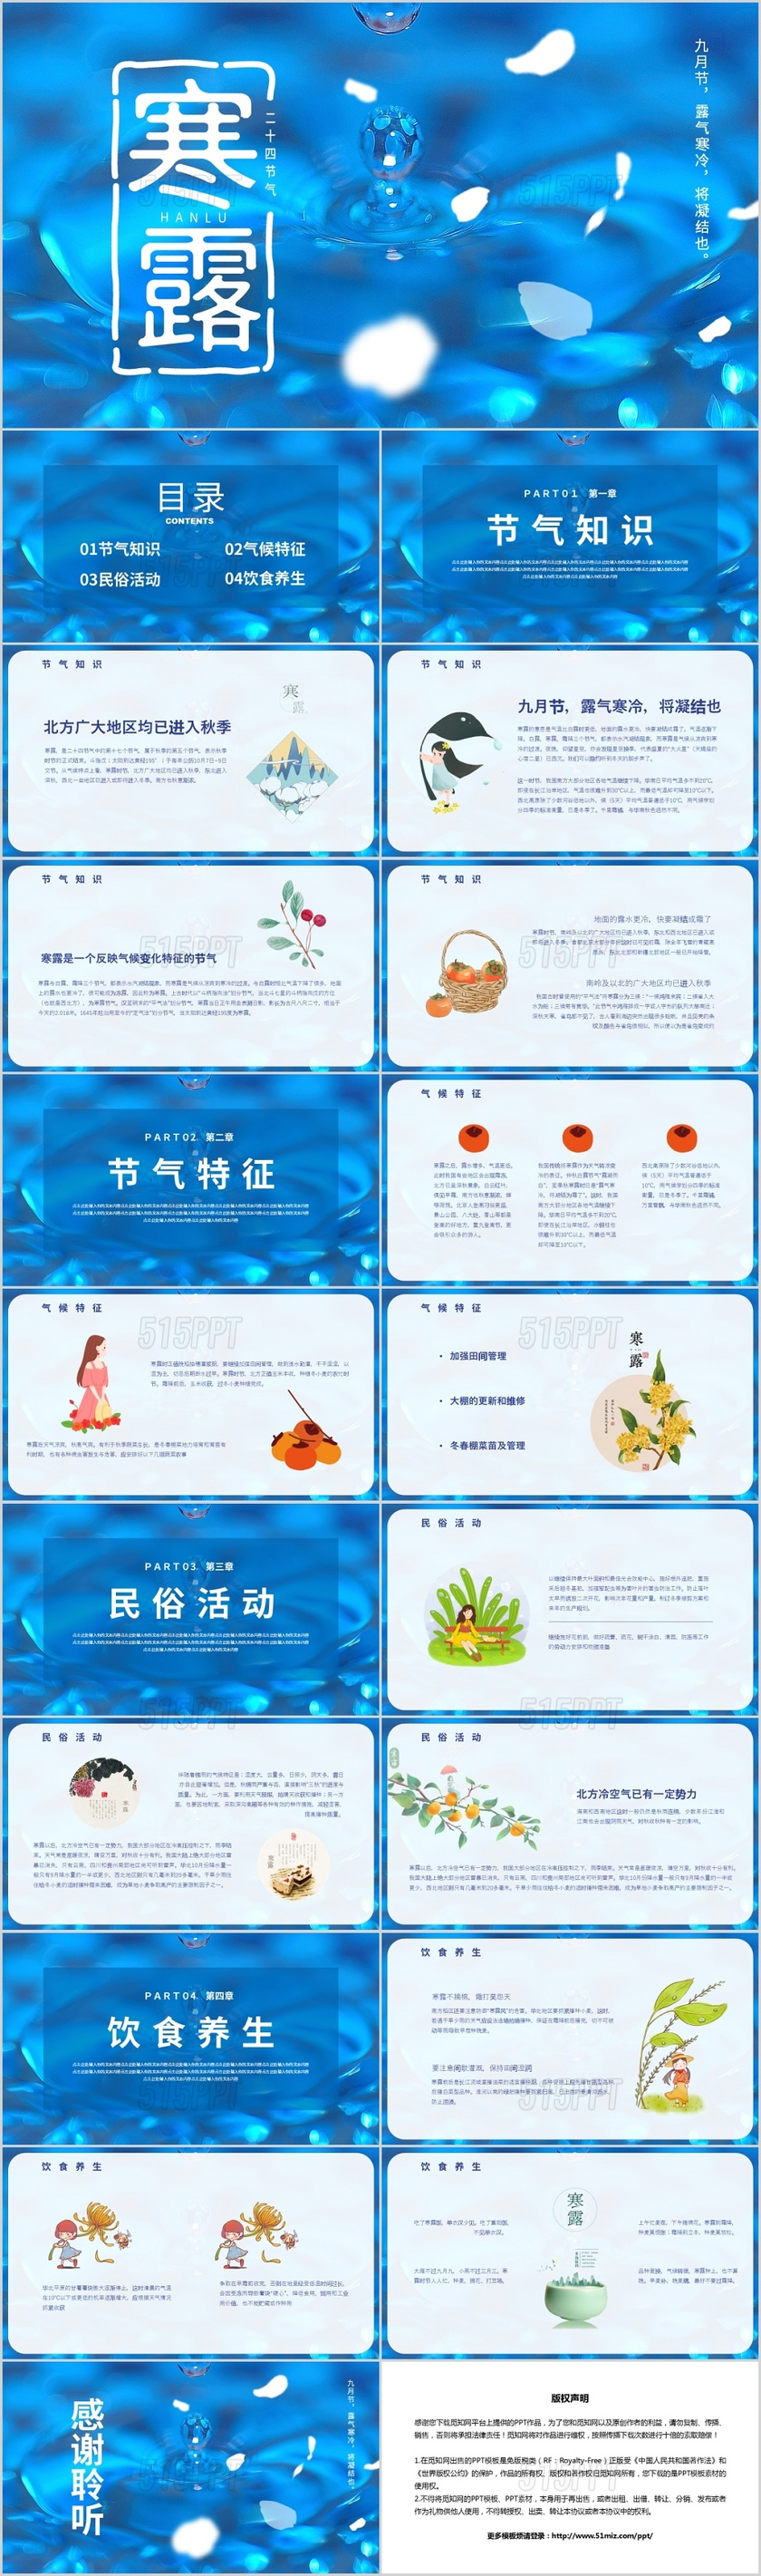 简约唯美风中国传统二十四节气之寒露节气介绍PPT模板